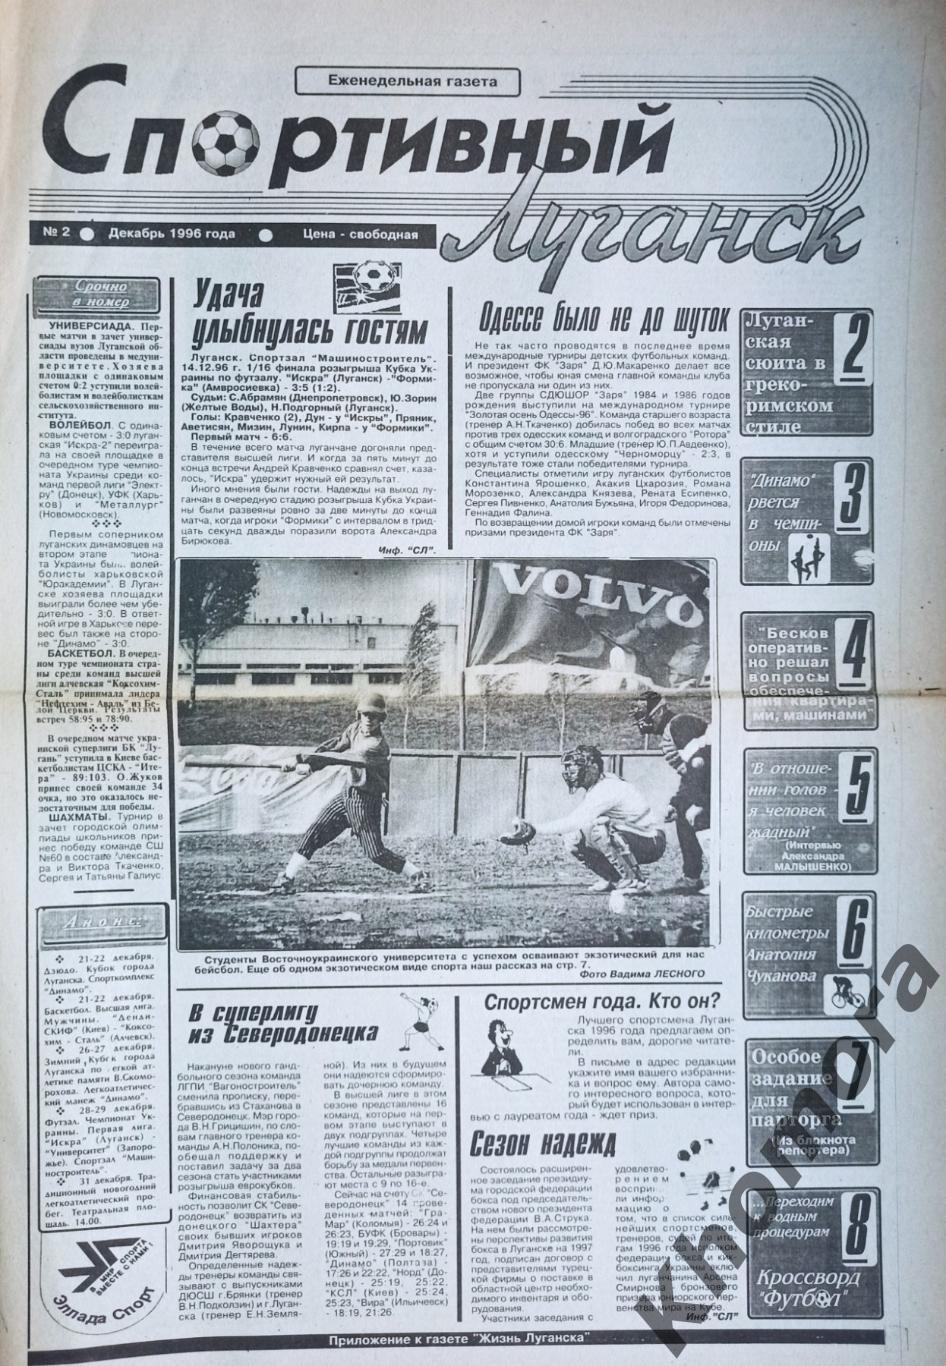 Спортивный Луганск №2 (декабрь 1996 года) - спортивная газета Луганщины